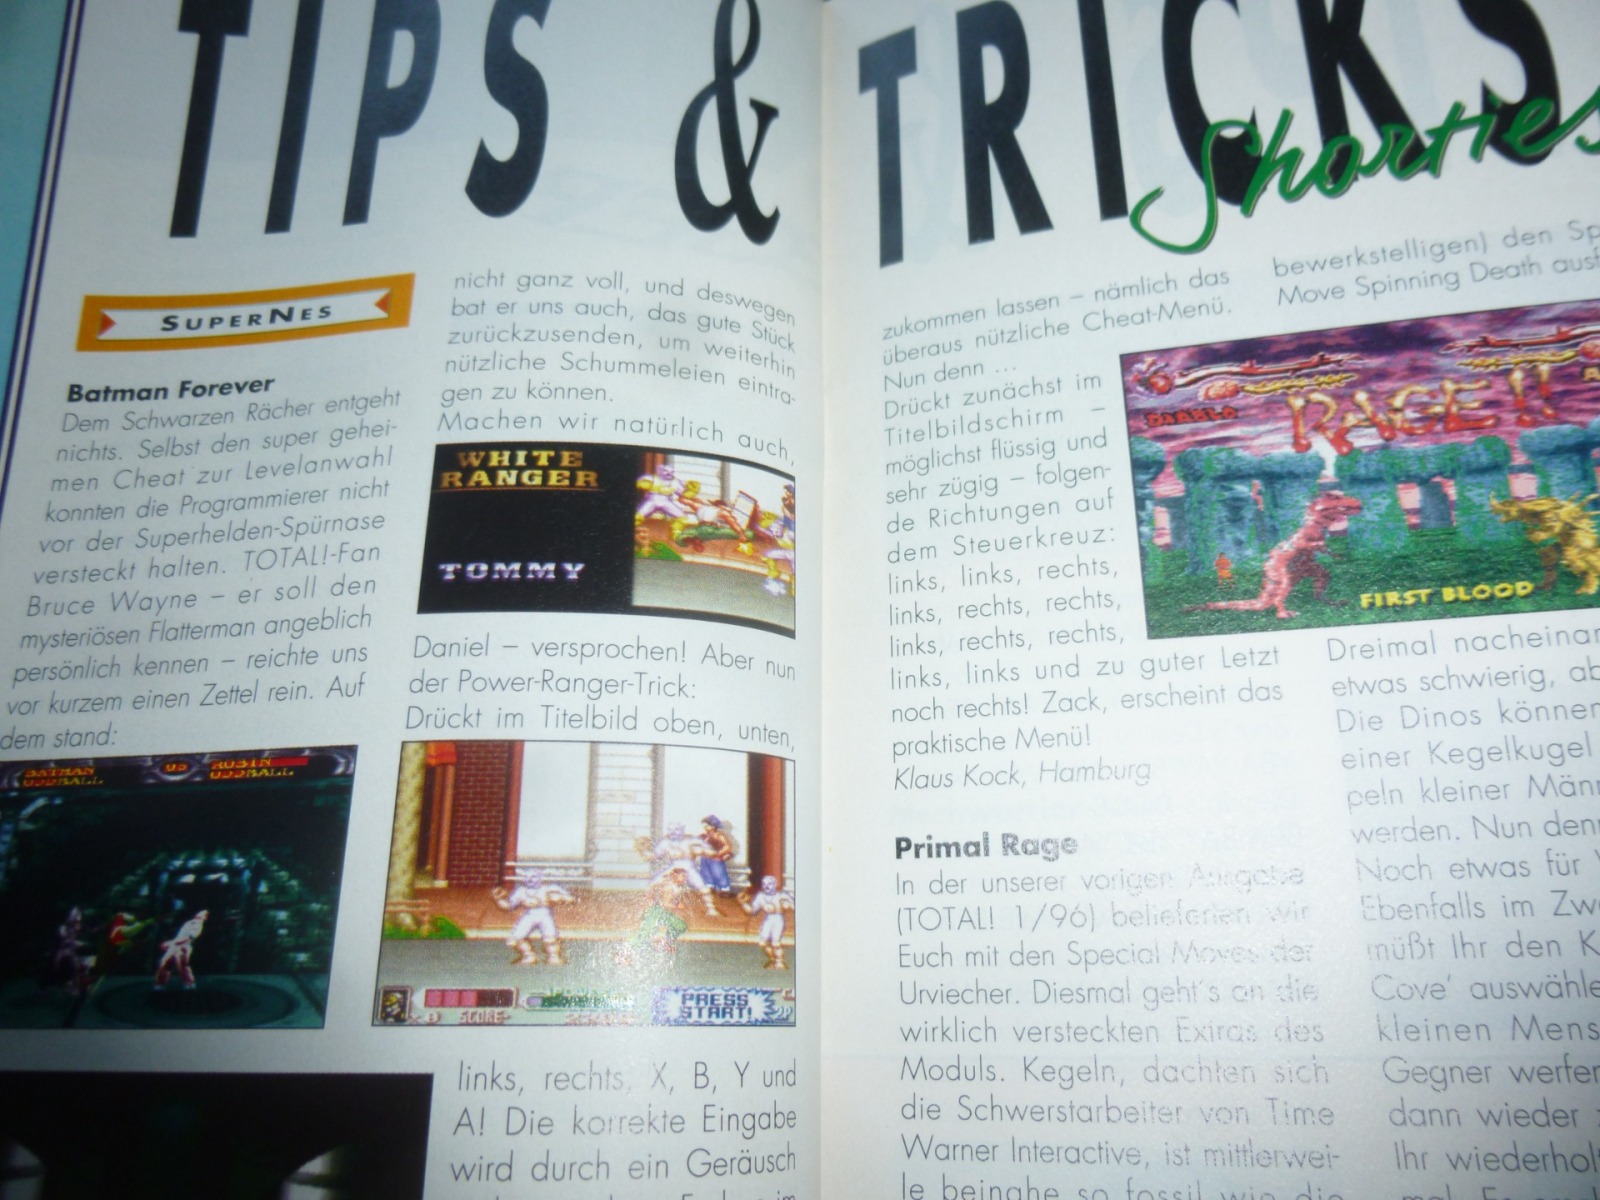 TOTAL Das unabhängige Magazin - 100 Nintendo - Ausgabe 2/96 1996 22